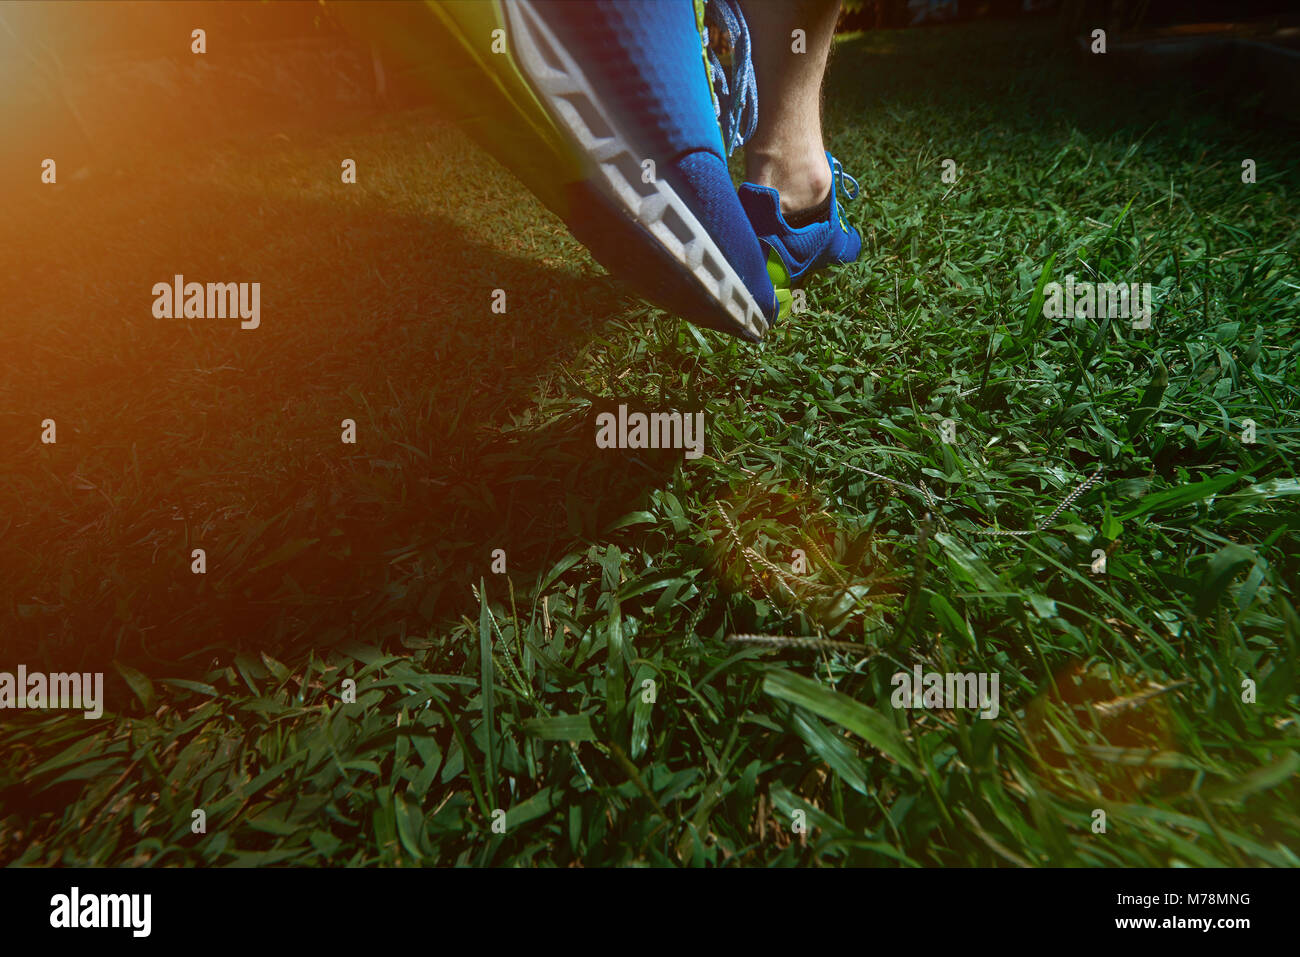 Man jogging sur terrain herbe verte en bleu chaussures. Close-up de l'étape de l'homme Banque D'Images